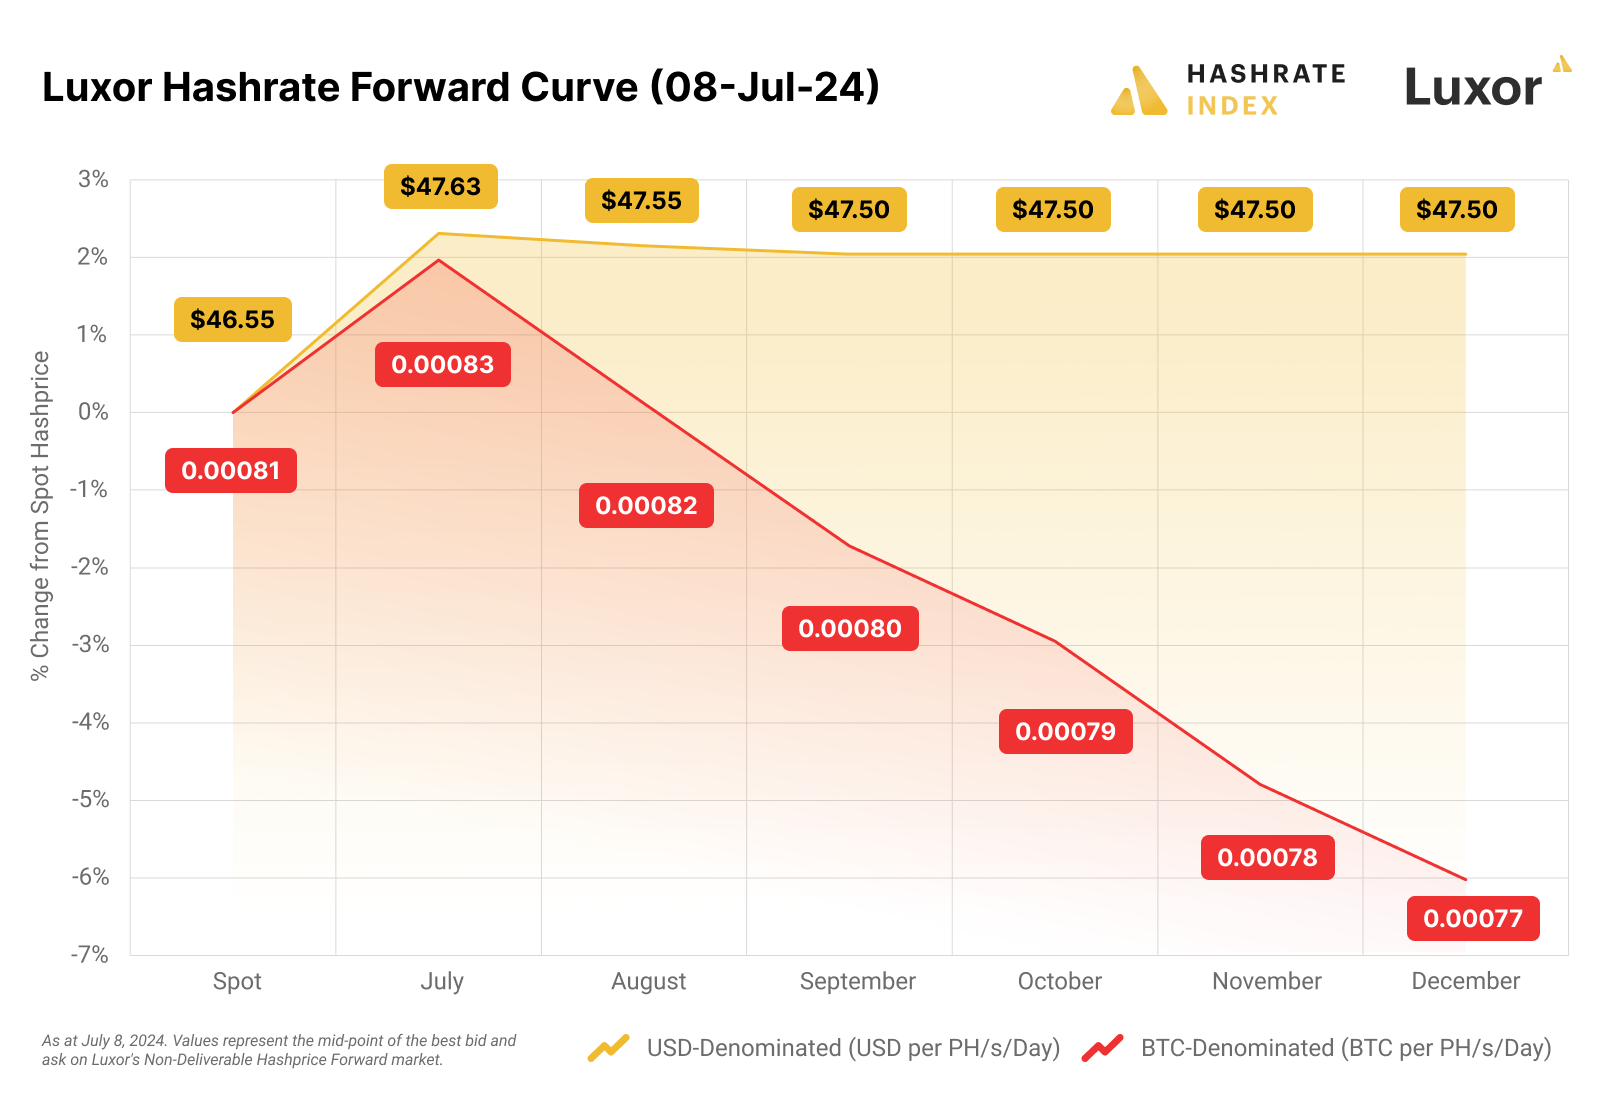 Hashrate Index Roundup (July 8, 2024)